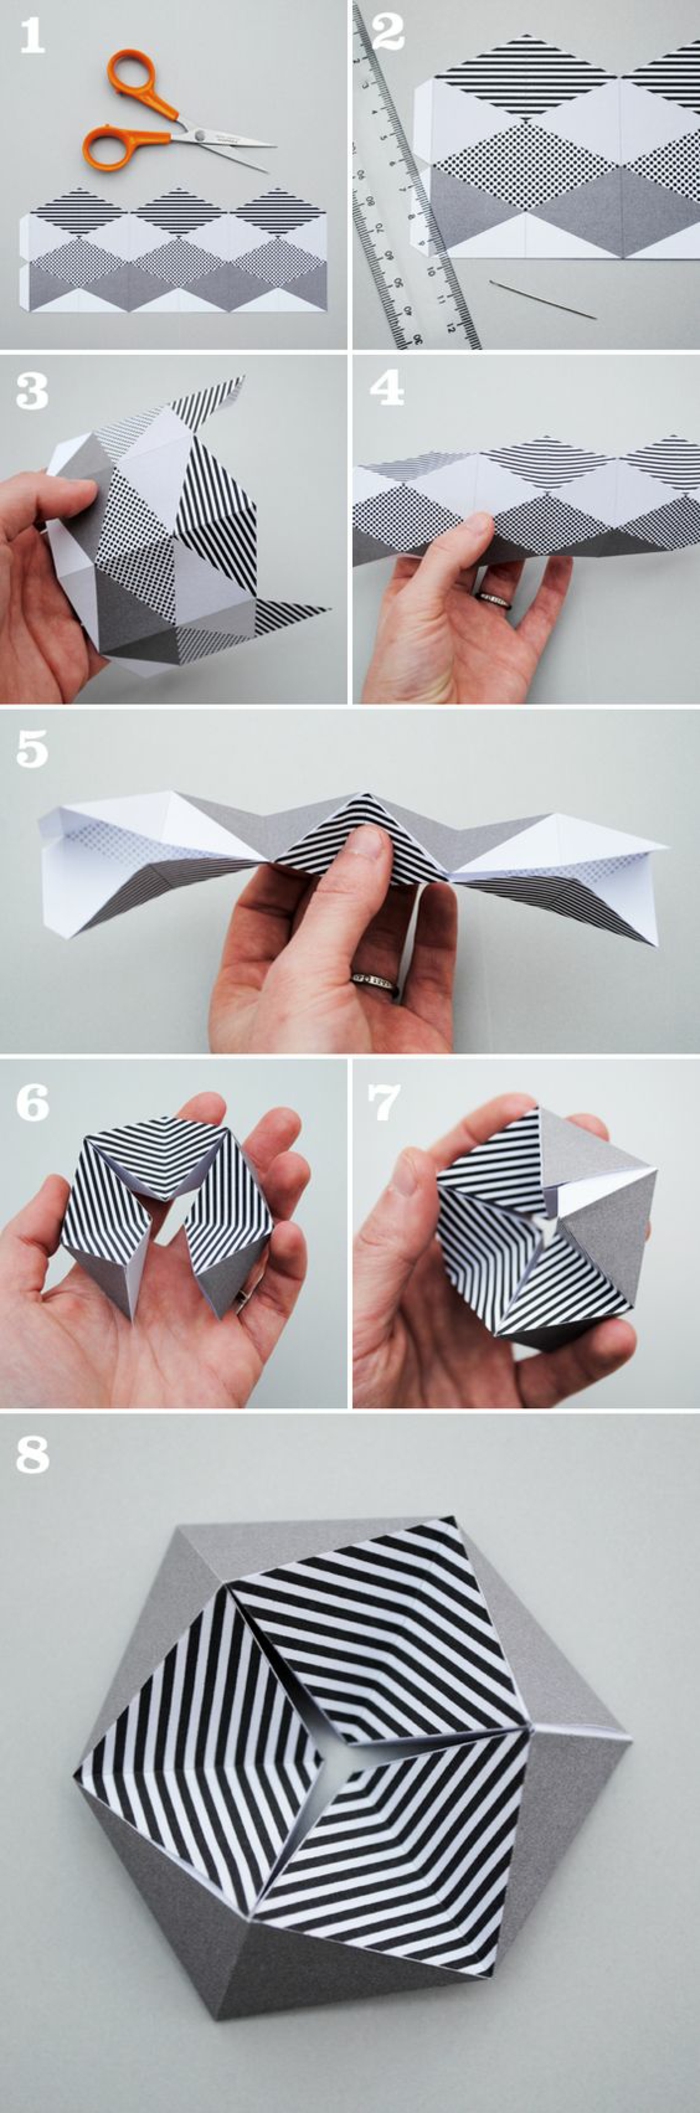 tuto de pliage papier en quelques étapes pour faire une fleur kaléidoscope hexagone en papier